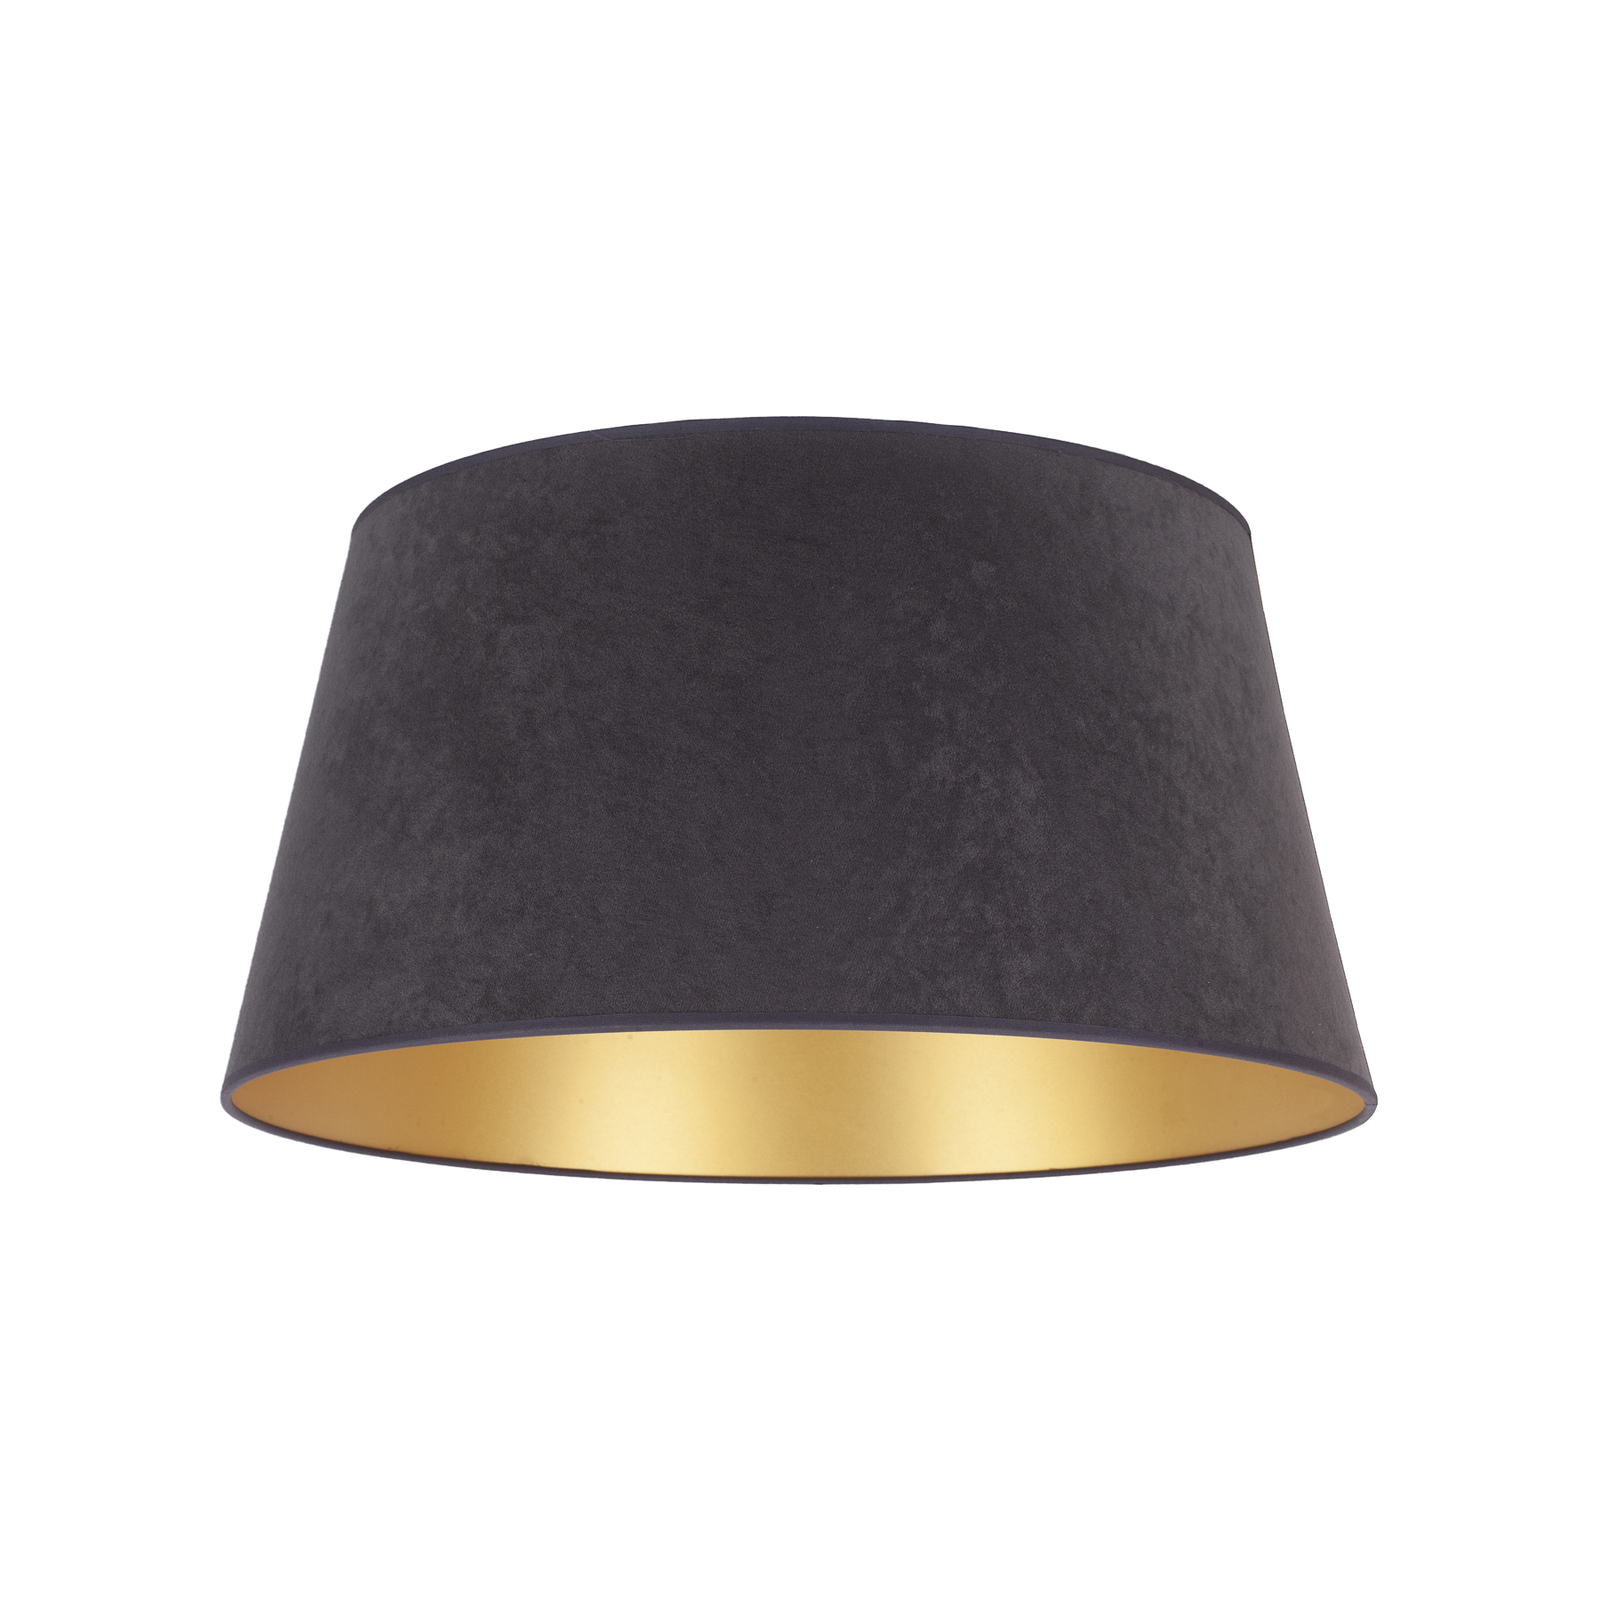 Cone lampeskærm, højde 22,5 cm, grafit/guld